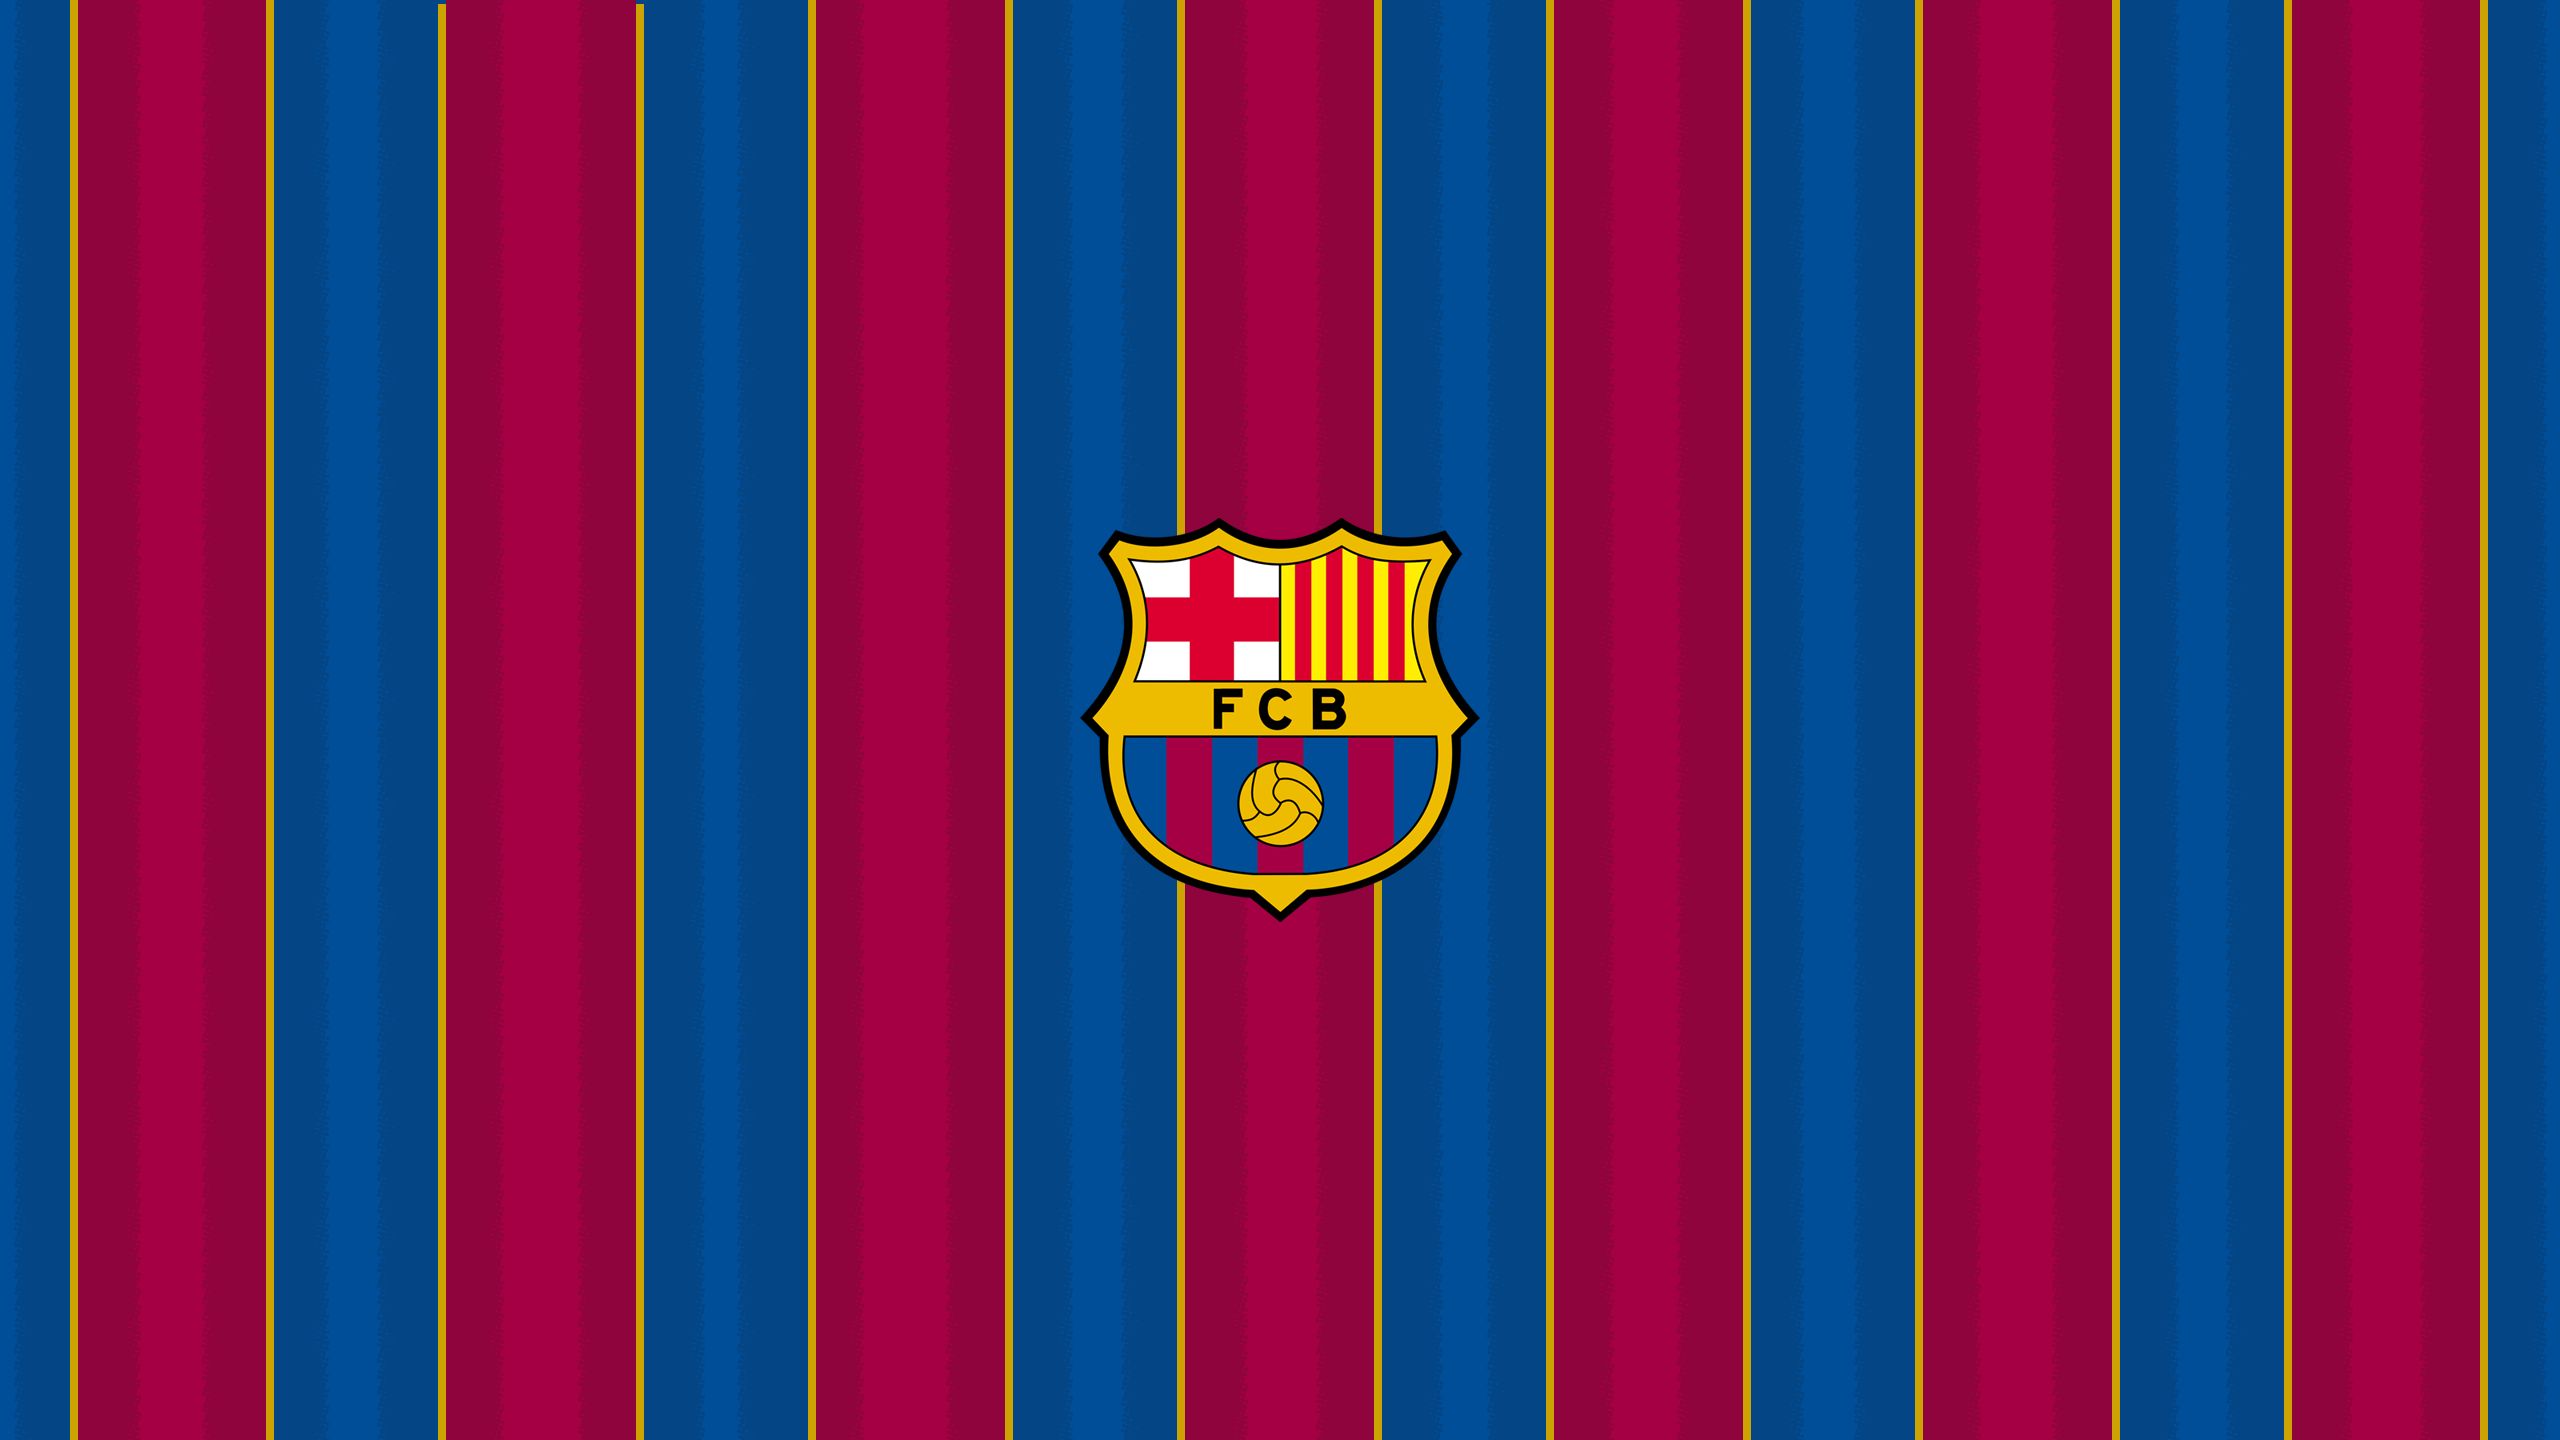 wallpapers fc barcelona, symbol, sports, crest, emblem, logo, soccer